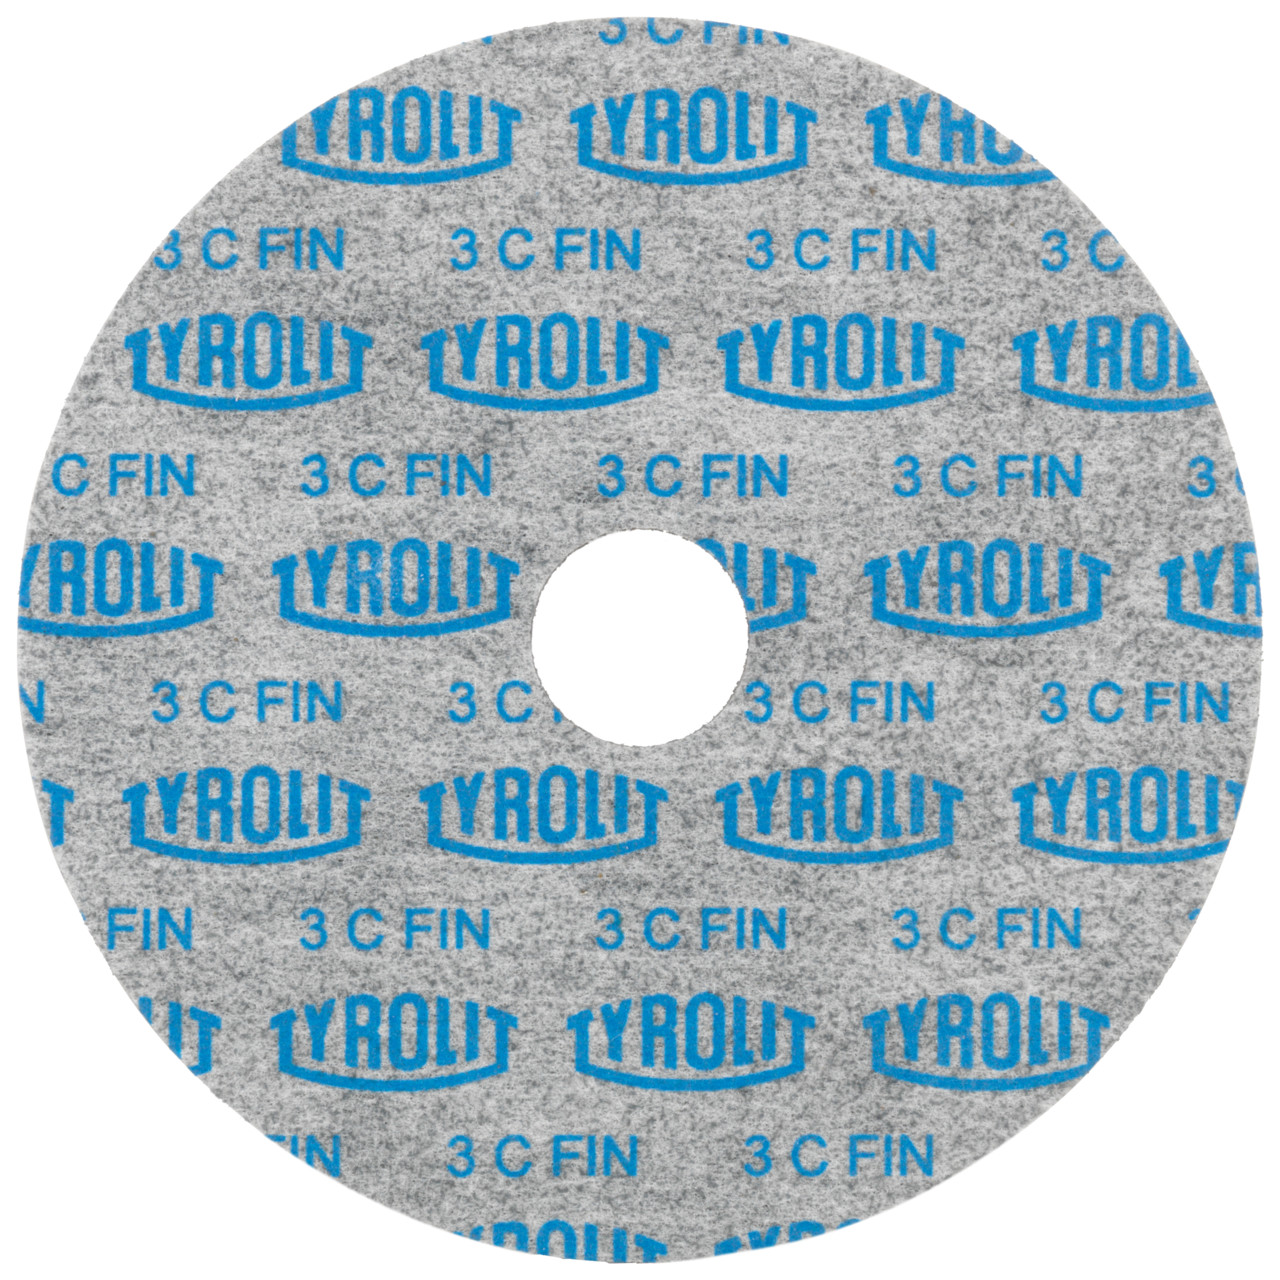 Tyrolit Discos compactos prensados DxDxH 152x6x25,4 De uso universal, 3 C FEIN, forma: 1, Art. 34190276